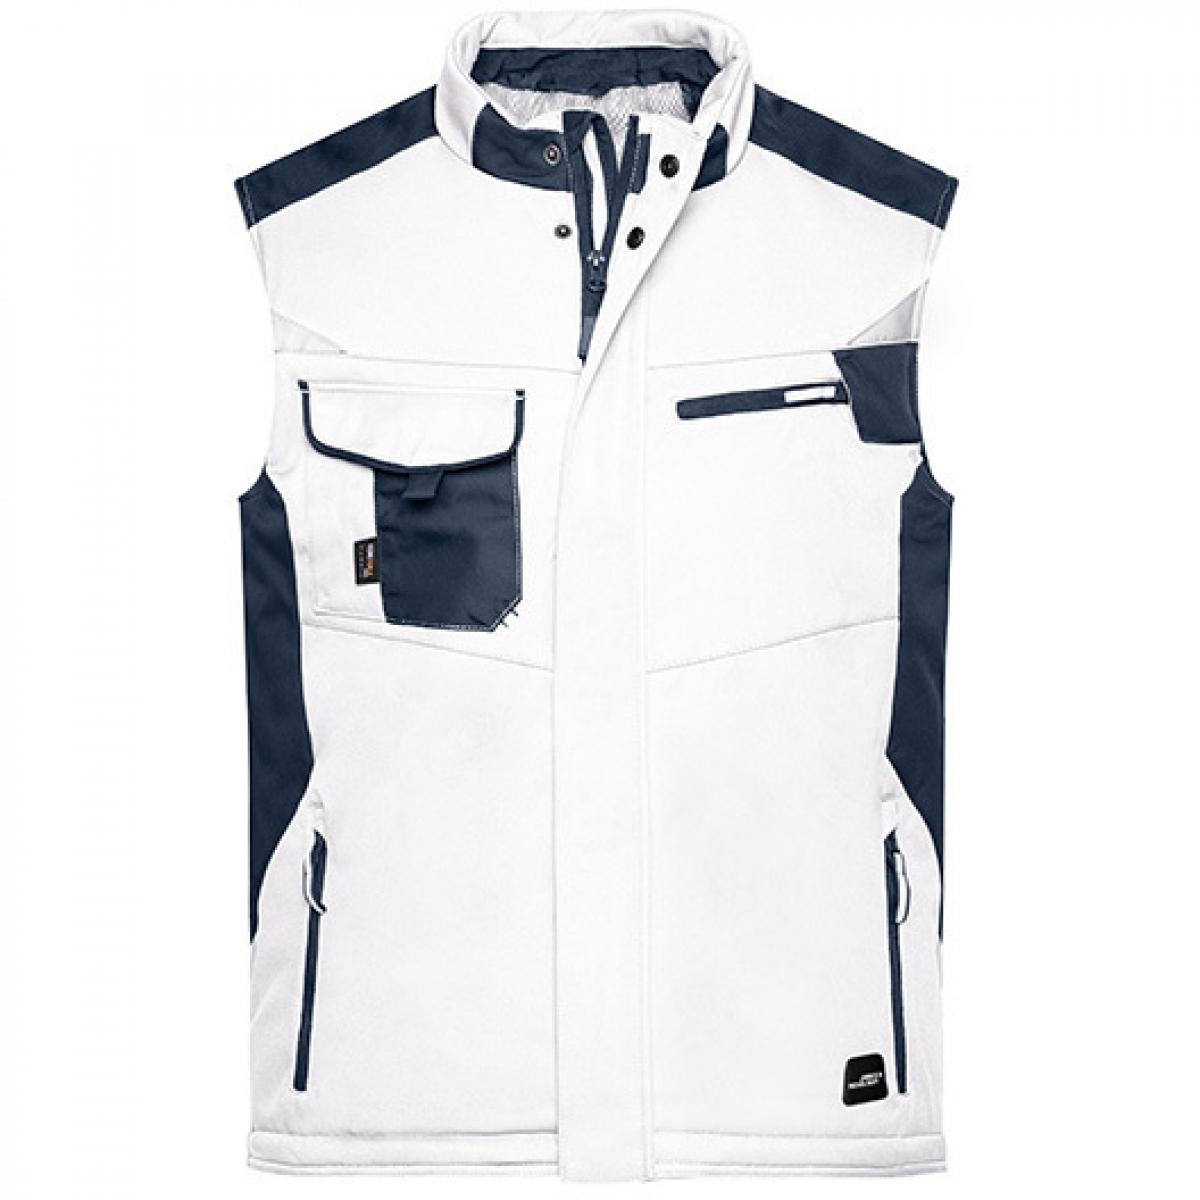 Hersteller: James+Nicholson Herstellernummer: JN825 Artikelbezeichnung: Herren Jacke, Craftsmen Softshell Vest -STRONG- Farbe: White/Carbon